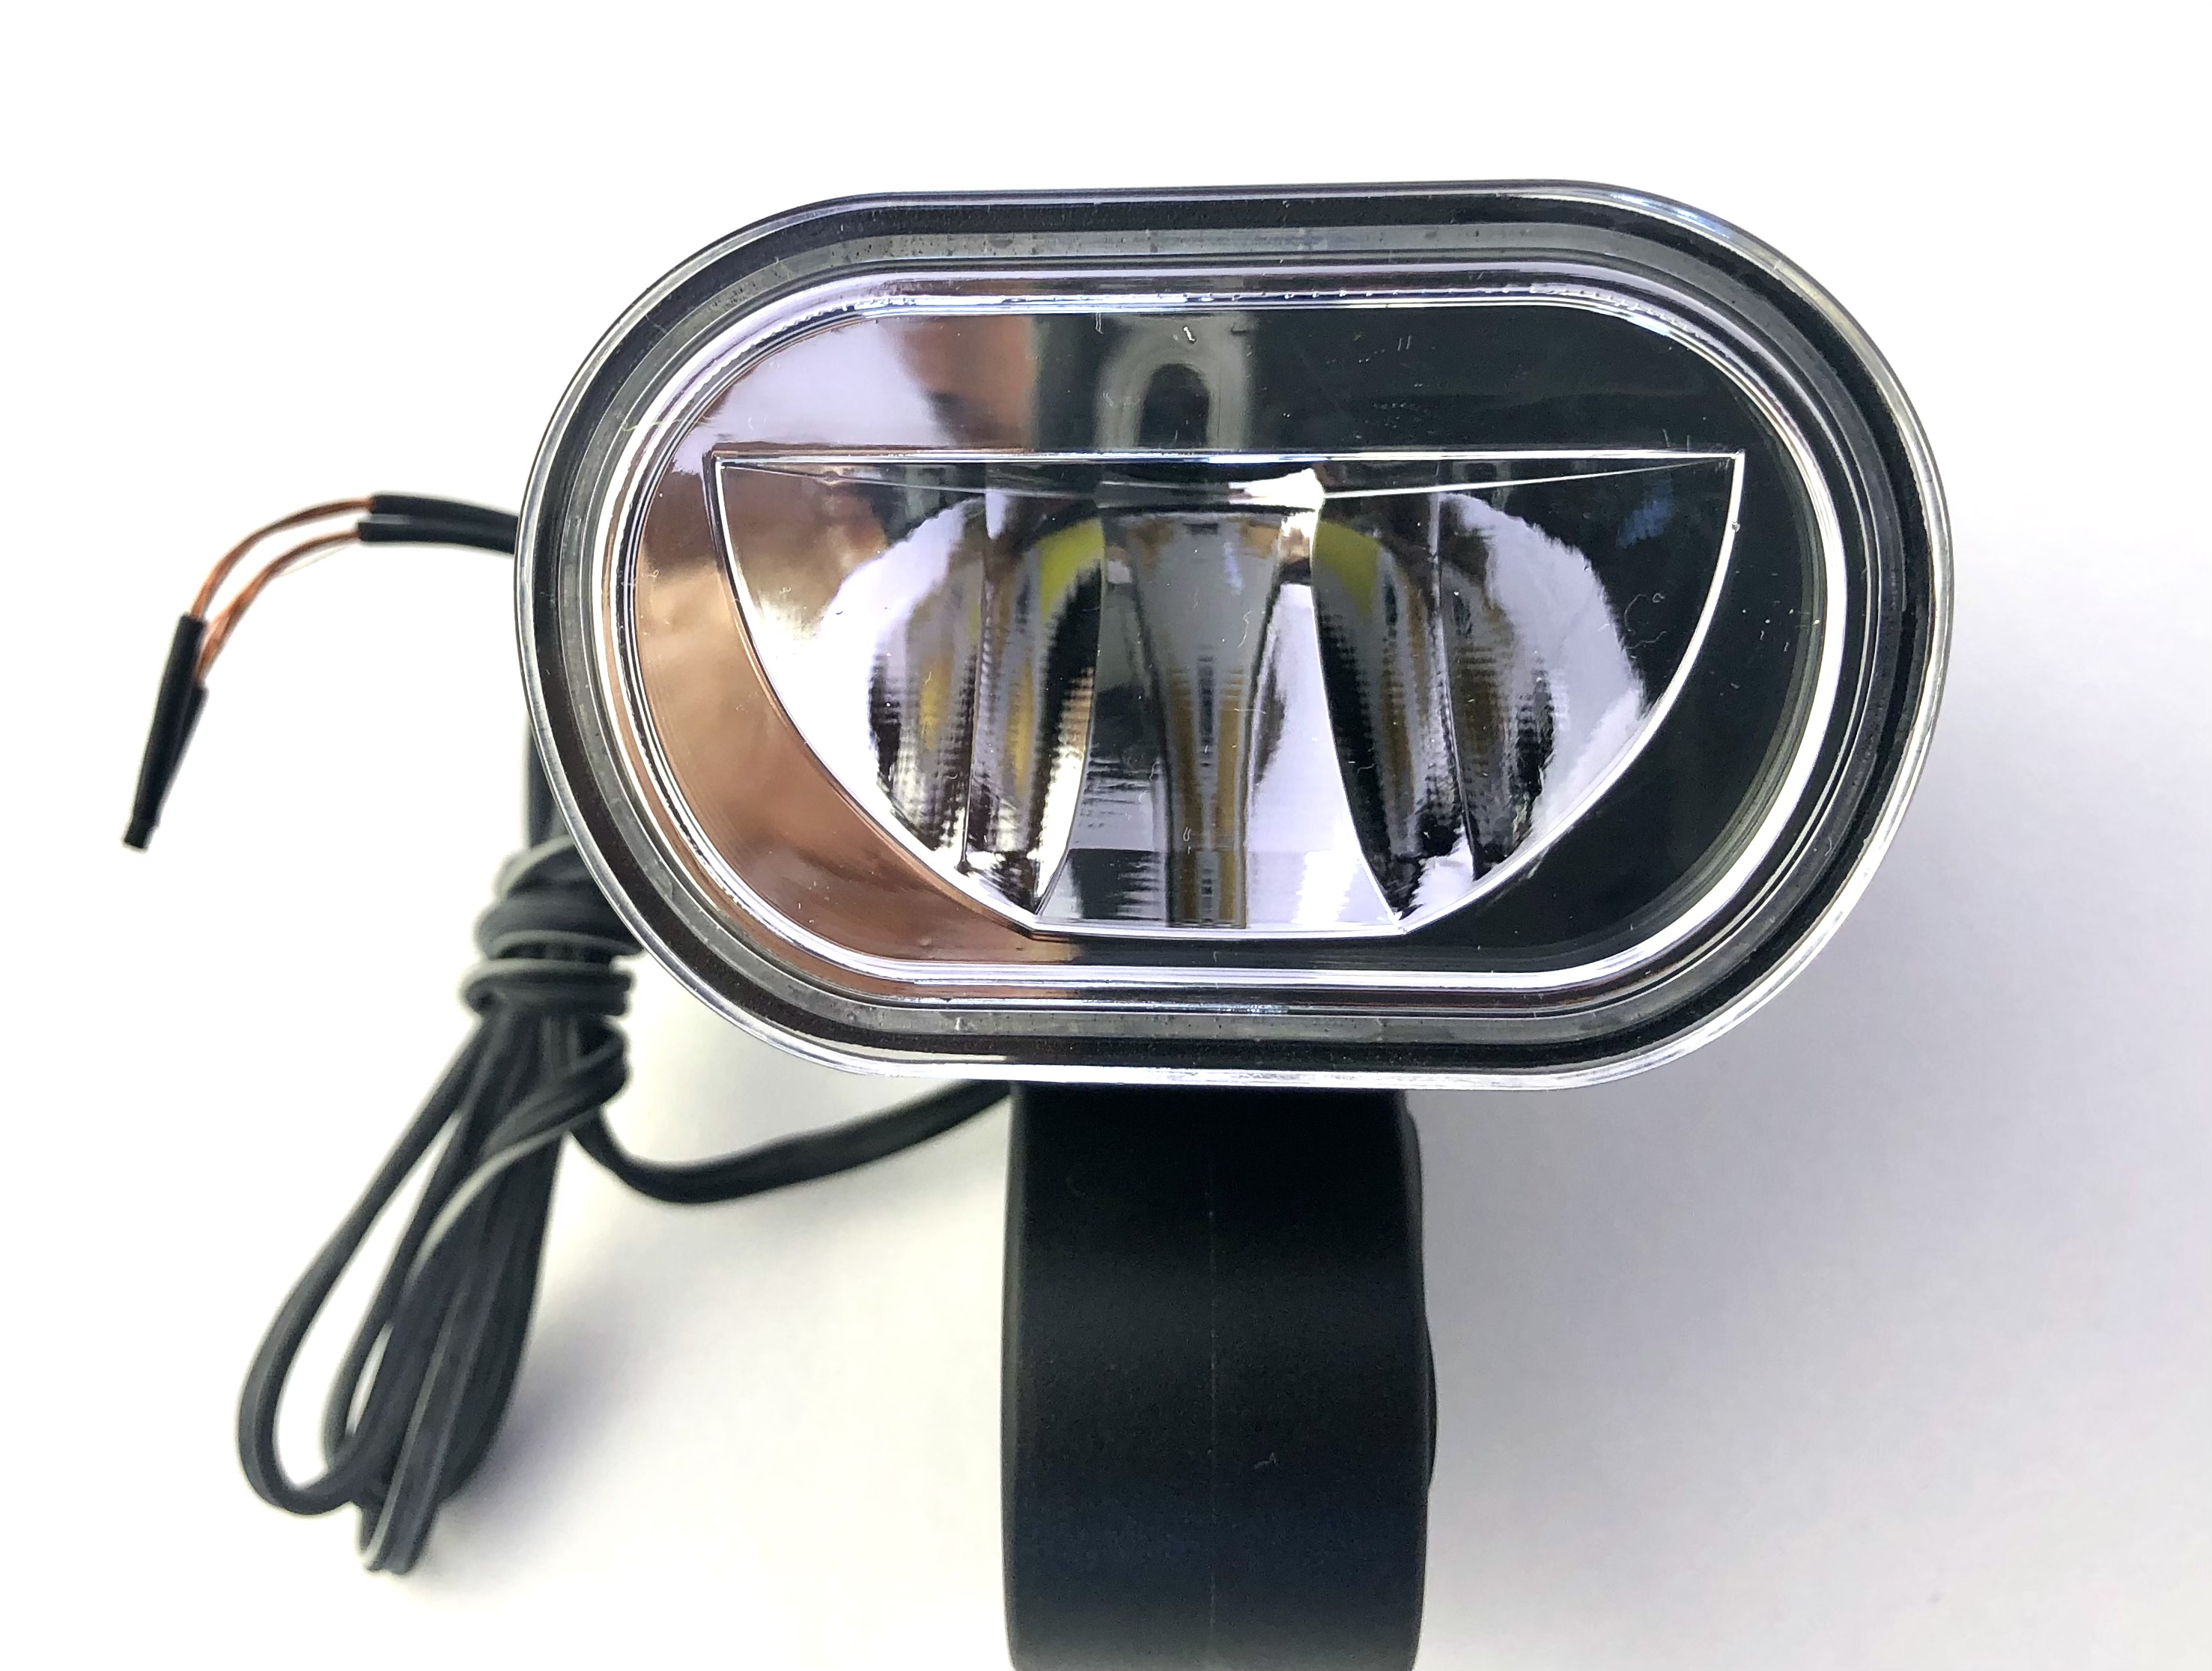 Philips LED E-Bike front lamp, black, handlebar mount